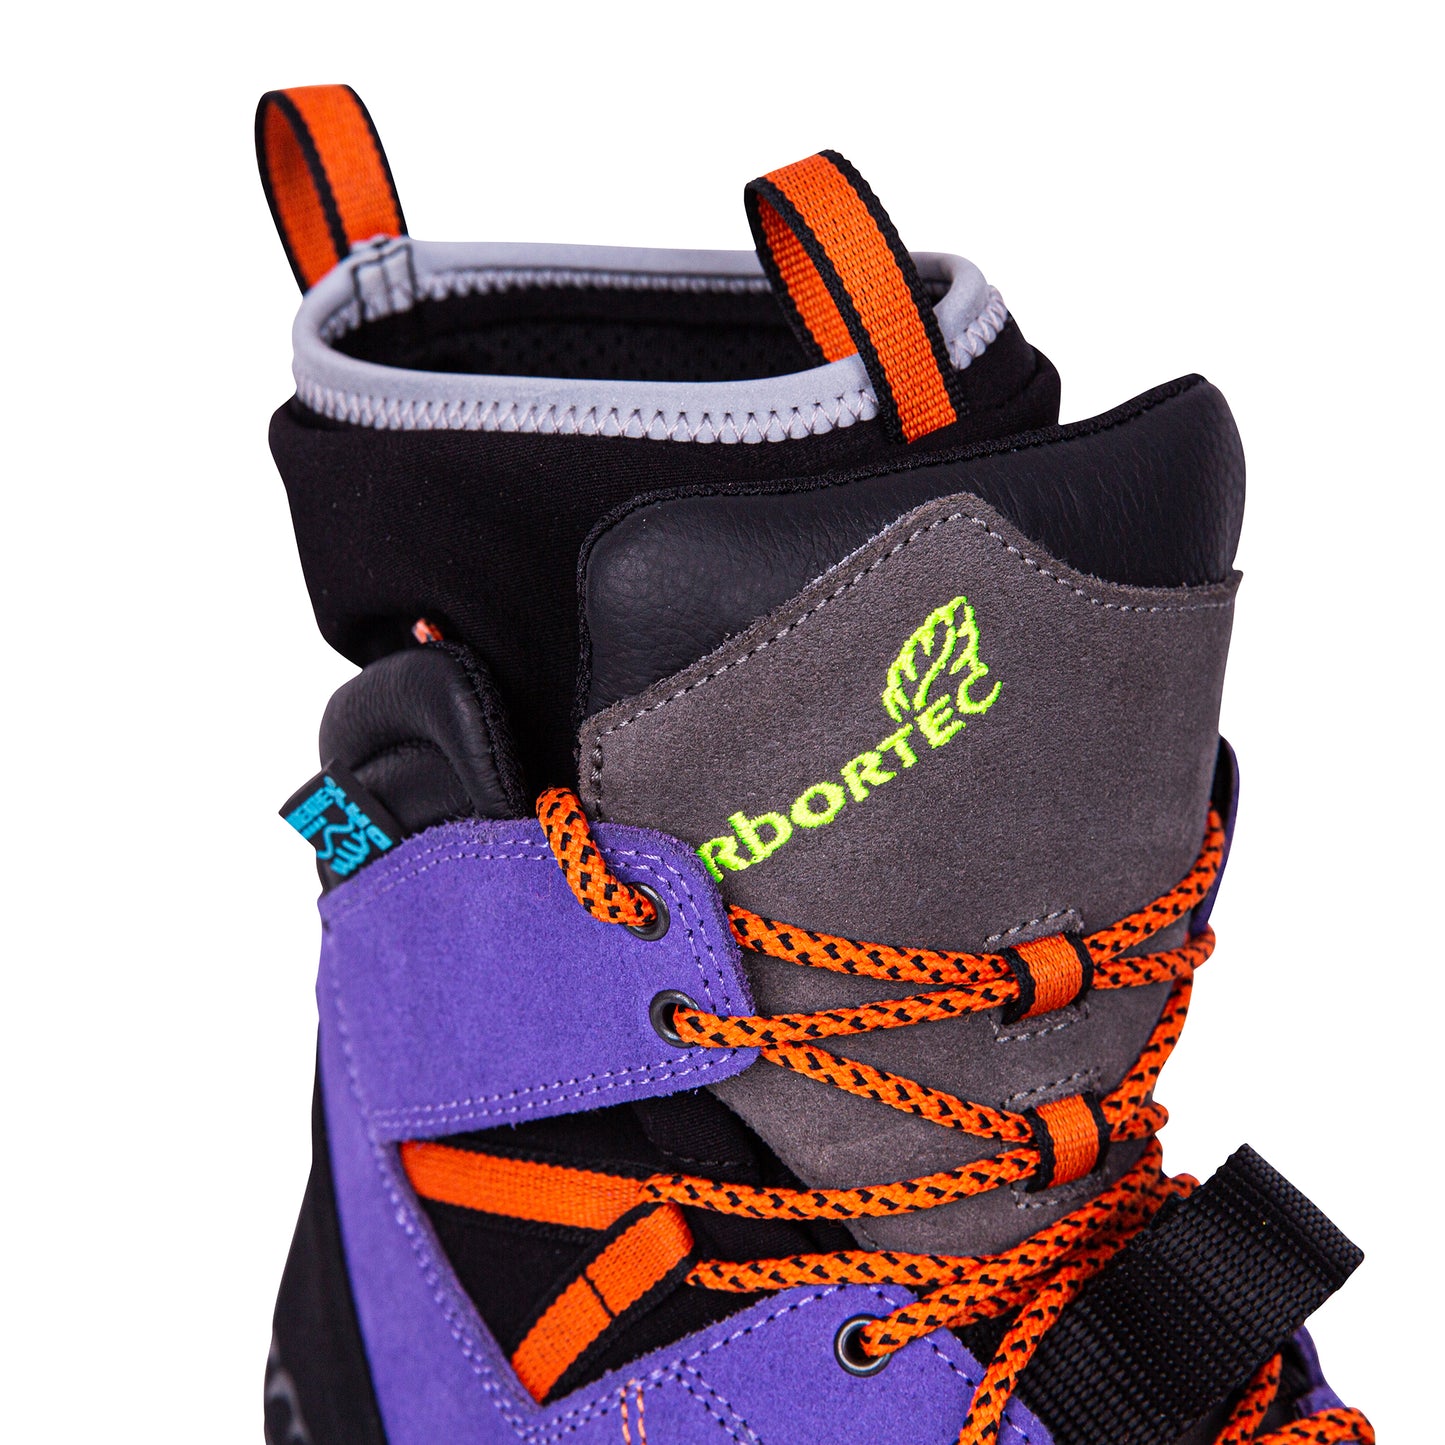 Arbortec Kayo Low-Cut Protective Climbing Boot